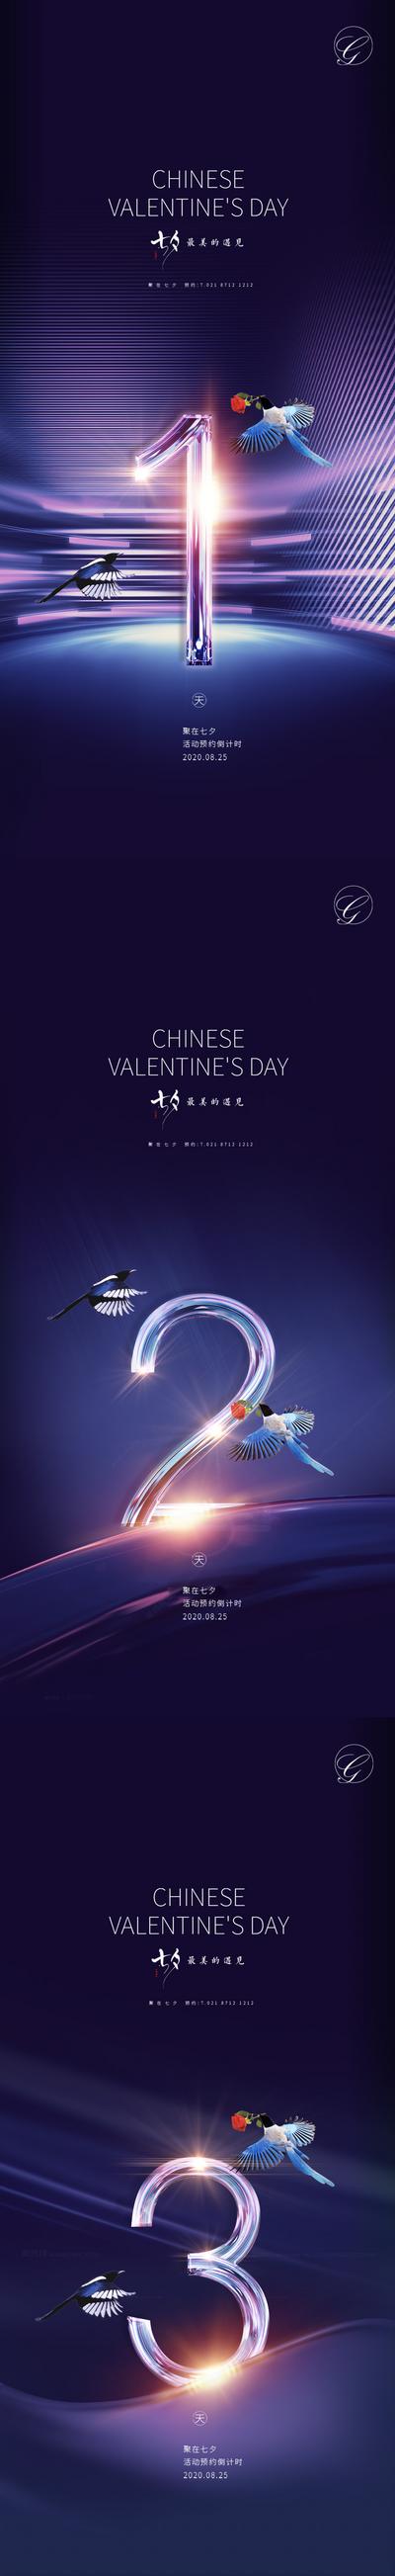 南门网 海报 中国传统节日 七夕 情人节 倒计时 紫金 数字 喜鹊 简约 高端